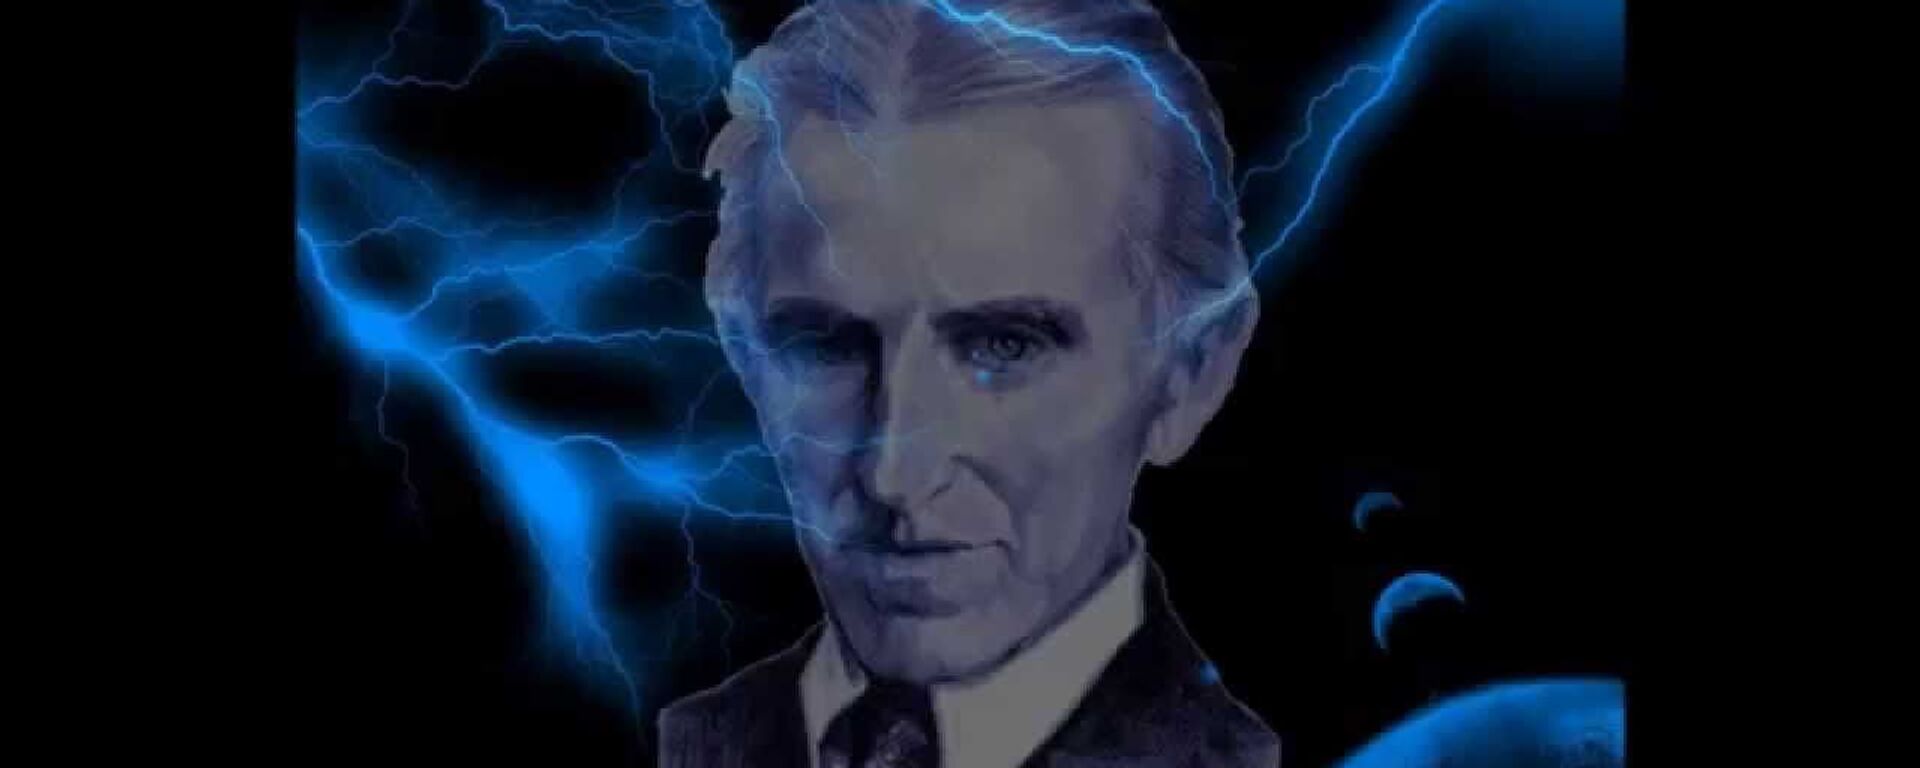 Nikola Tesla ilustracija - Sputnik Srbija, 1920, 27.03.2020